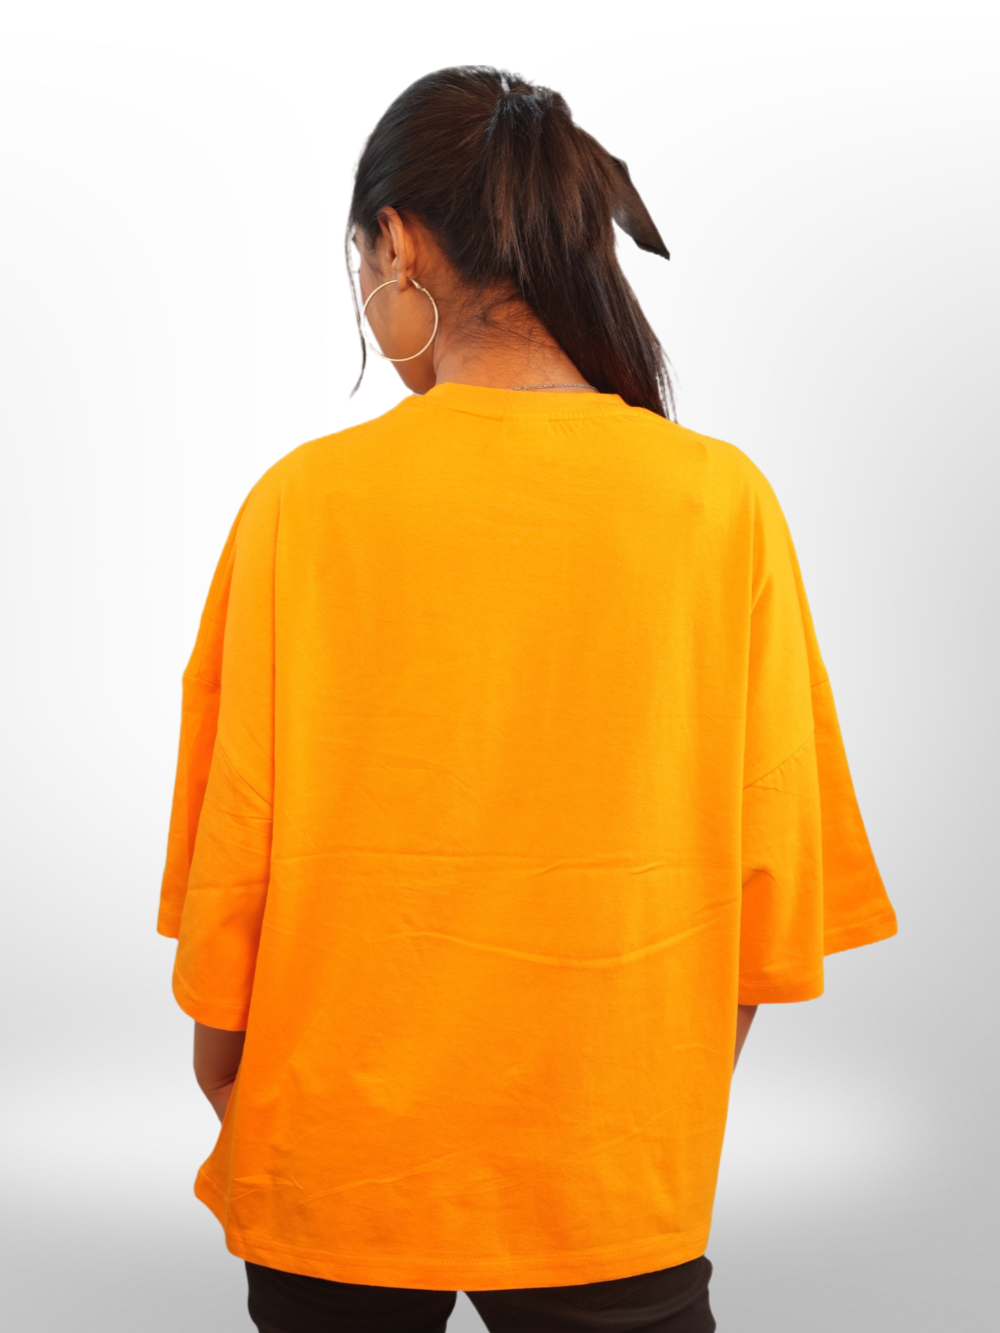 Drop Shoulder T-shirt For Women's - Legacy Boutiques